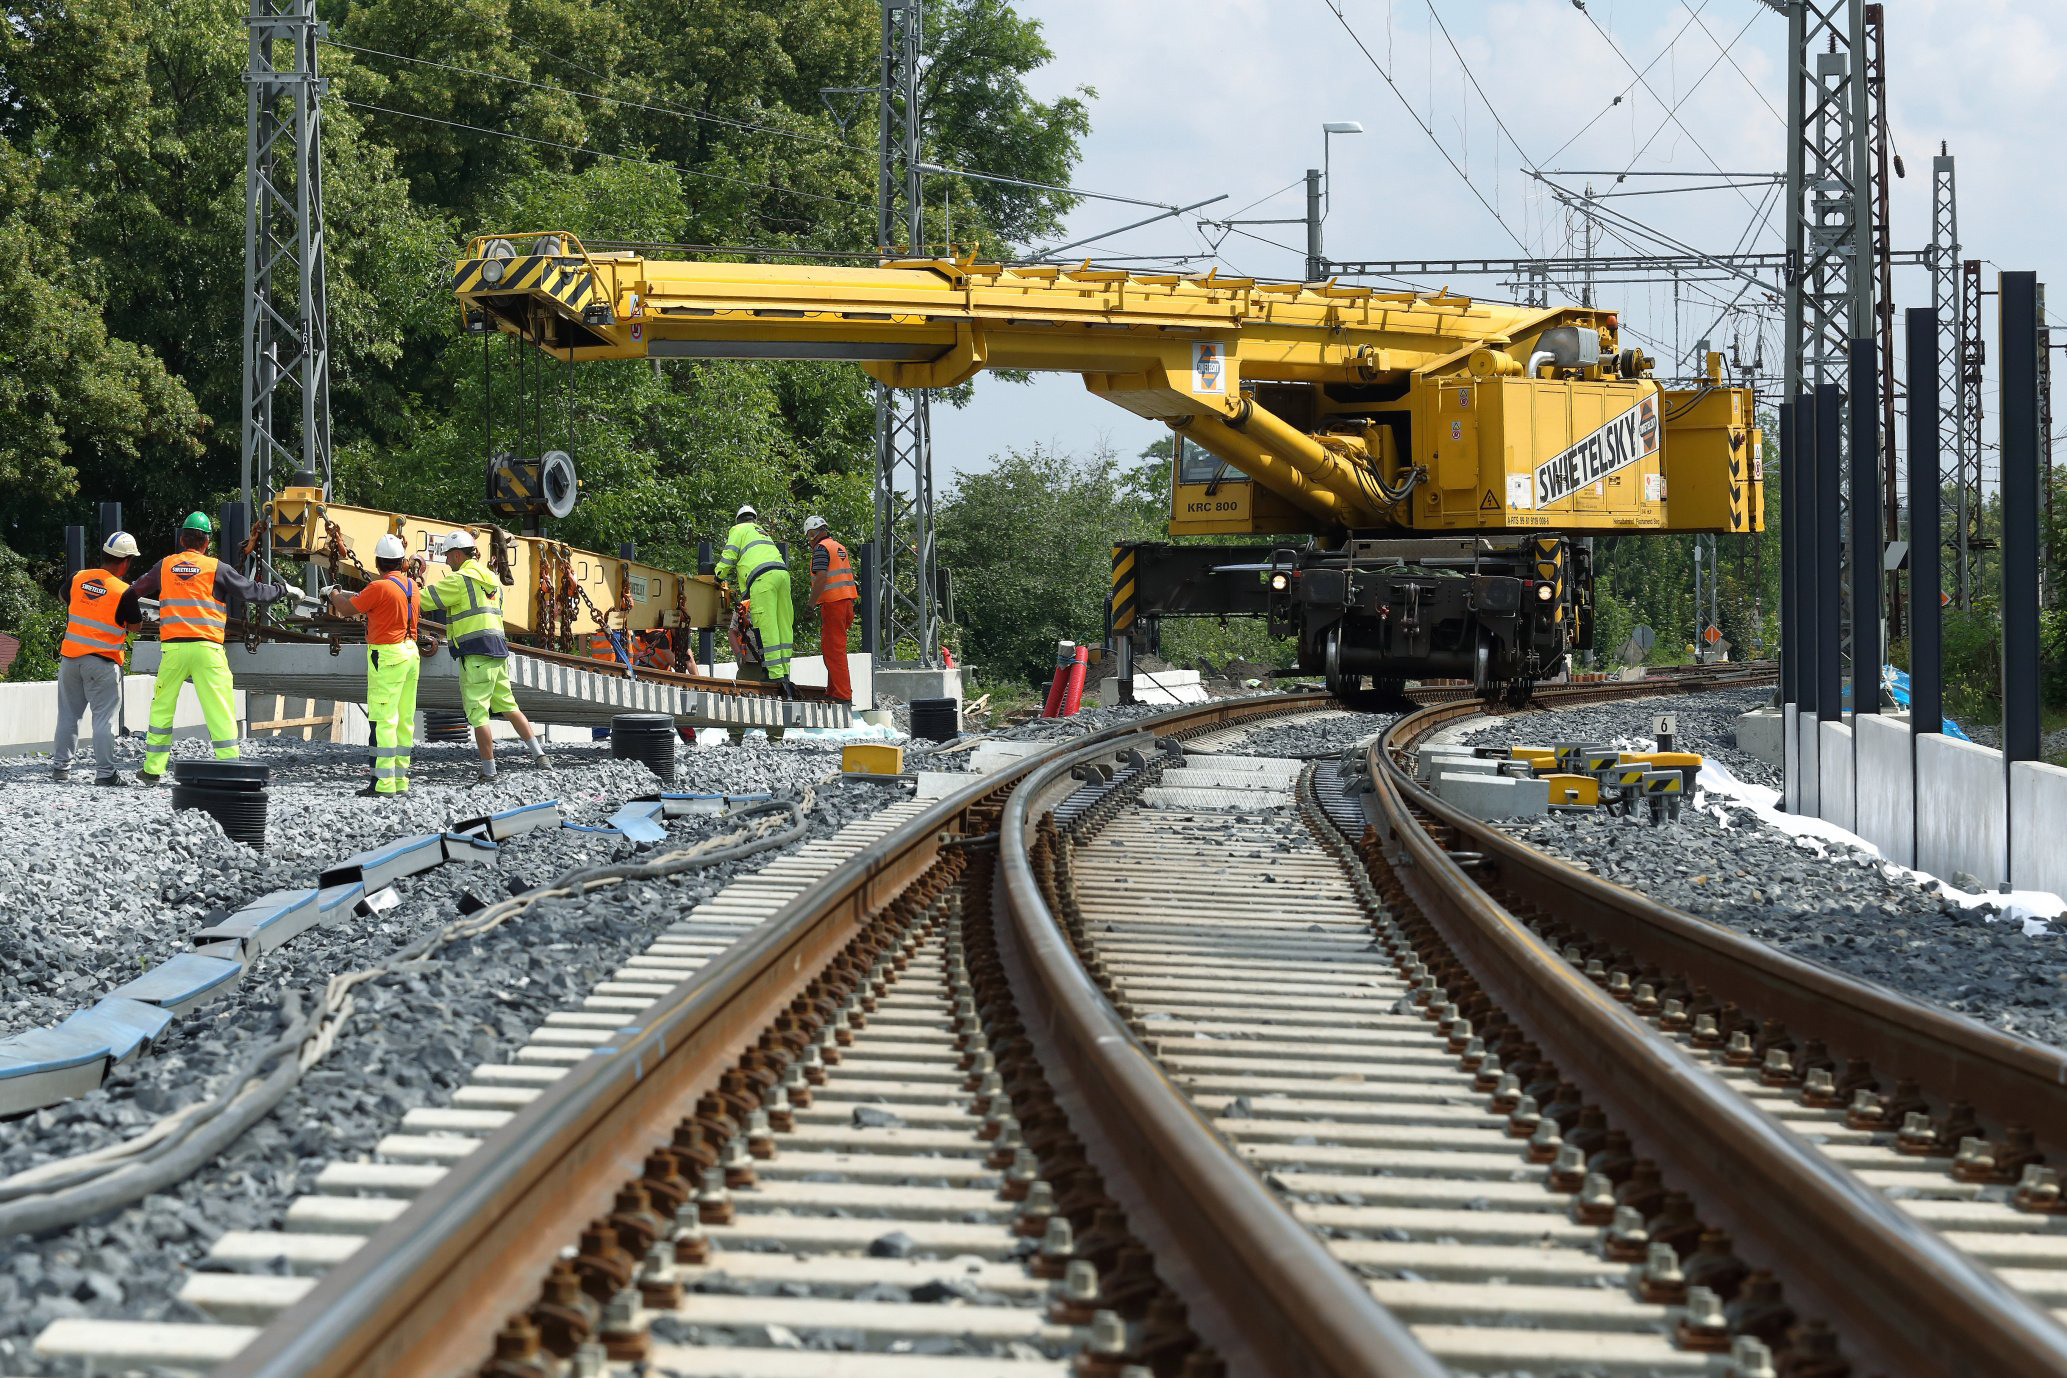 Obnova železniční stanice, Čelákovice - Budownictwo kolejowe